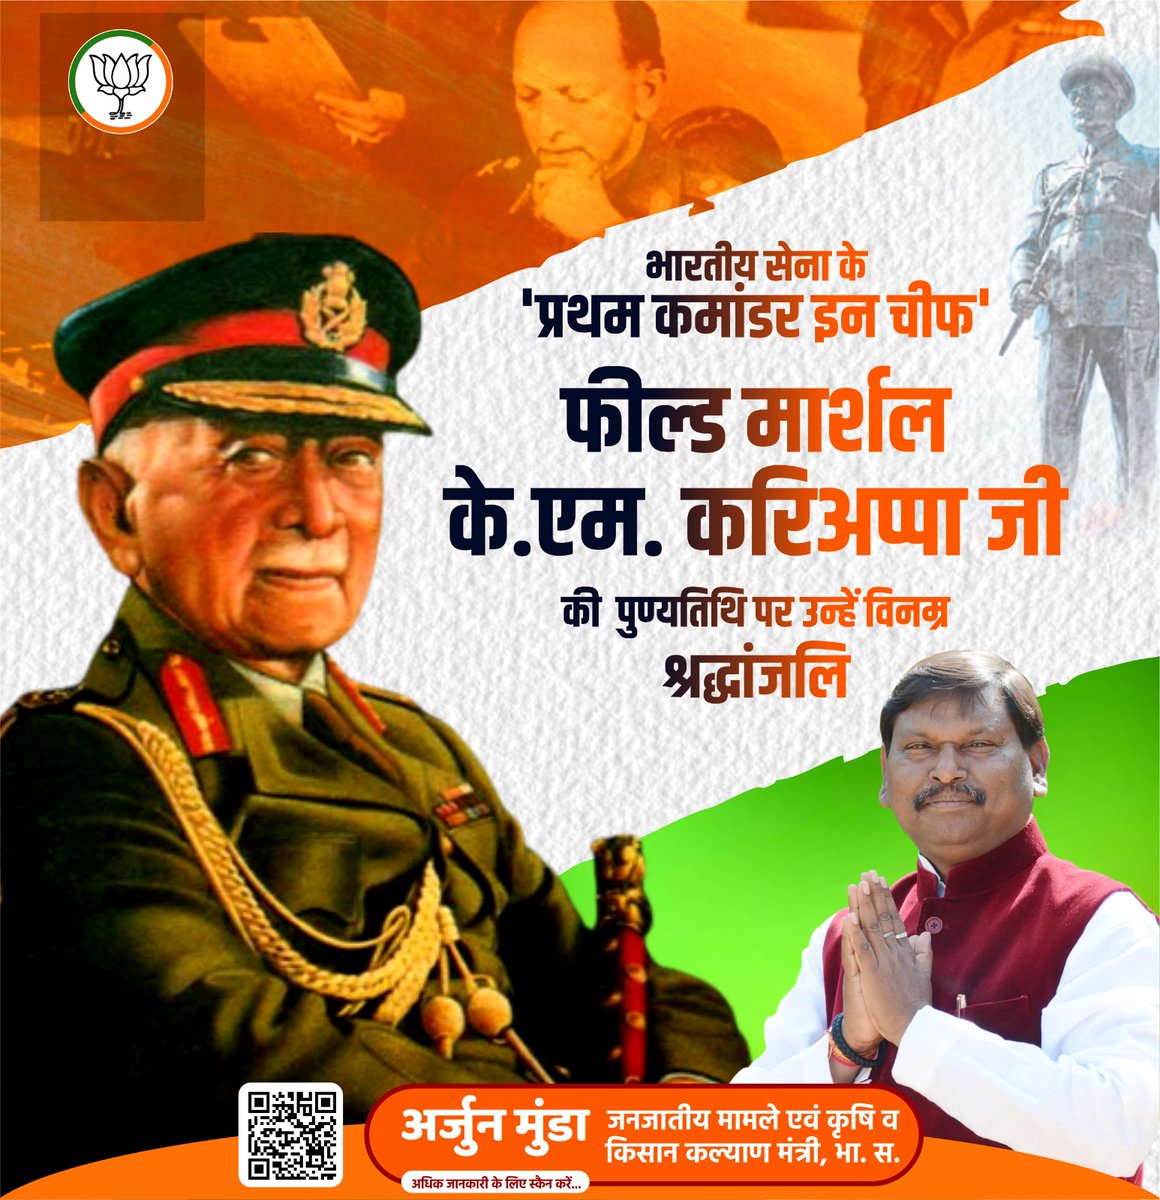 भारतीय सेना के 'प्रथम कमांडर इन चीफ' फील्ड मार्शल के.एम. करिअप्पा जी की पुण्यतिथि पर उन्हें विनम्र श्रद्धांजलि।